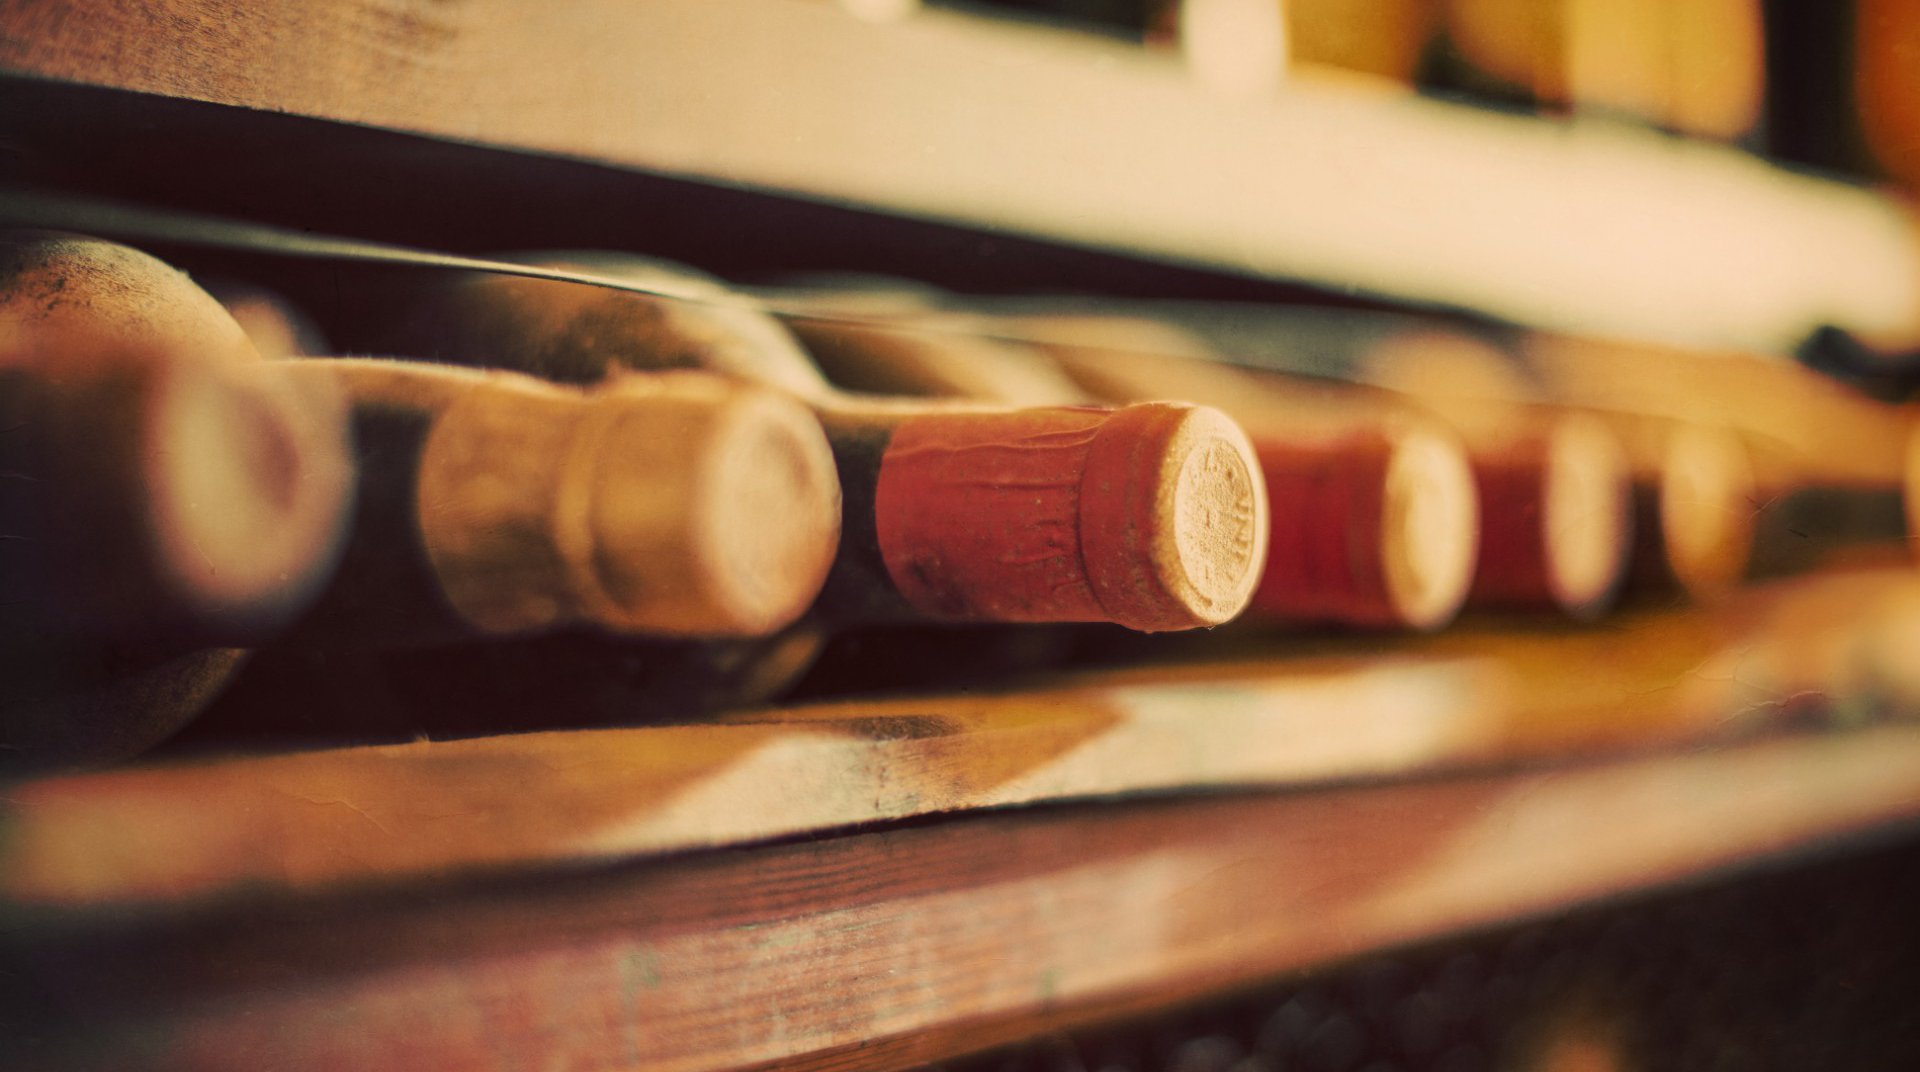 Bottles of wine on a wooden shelf